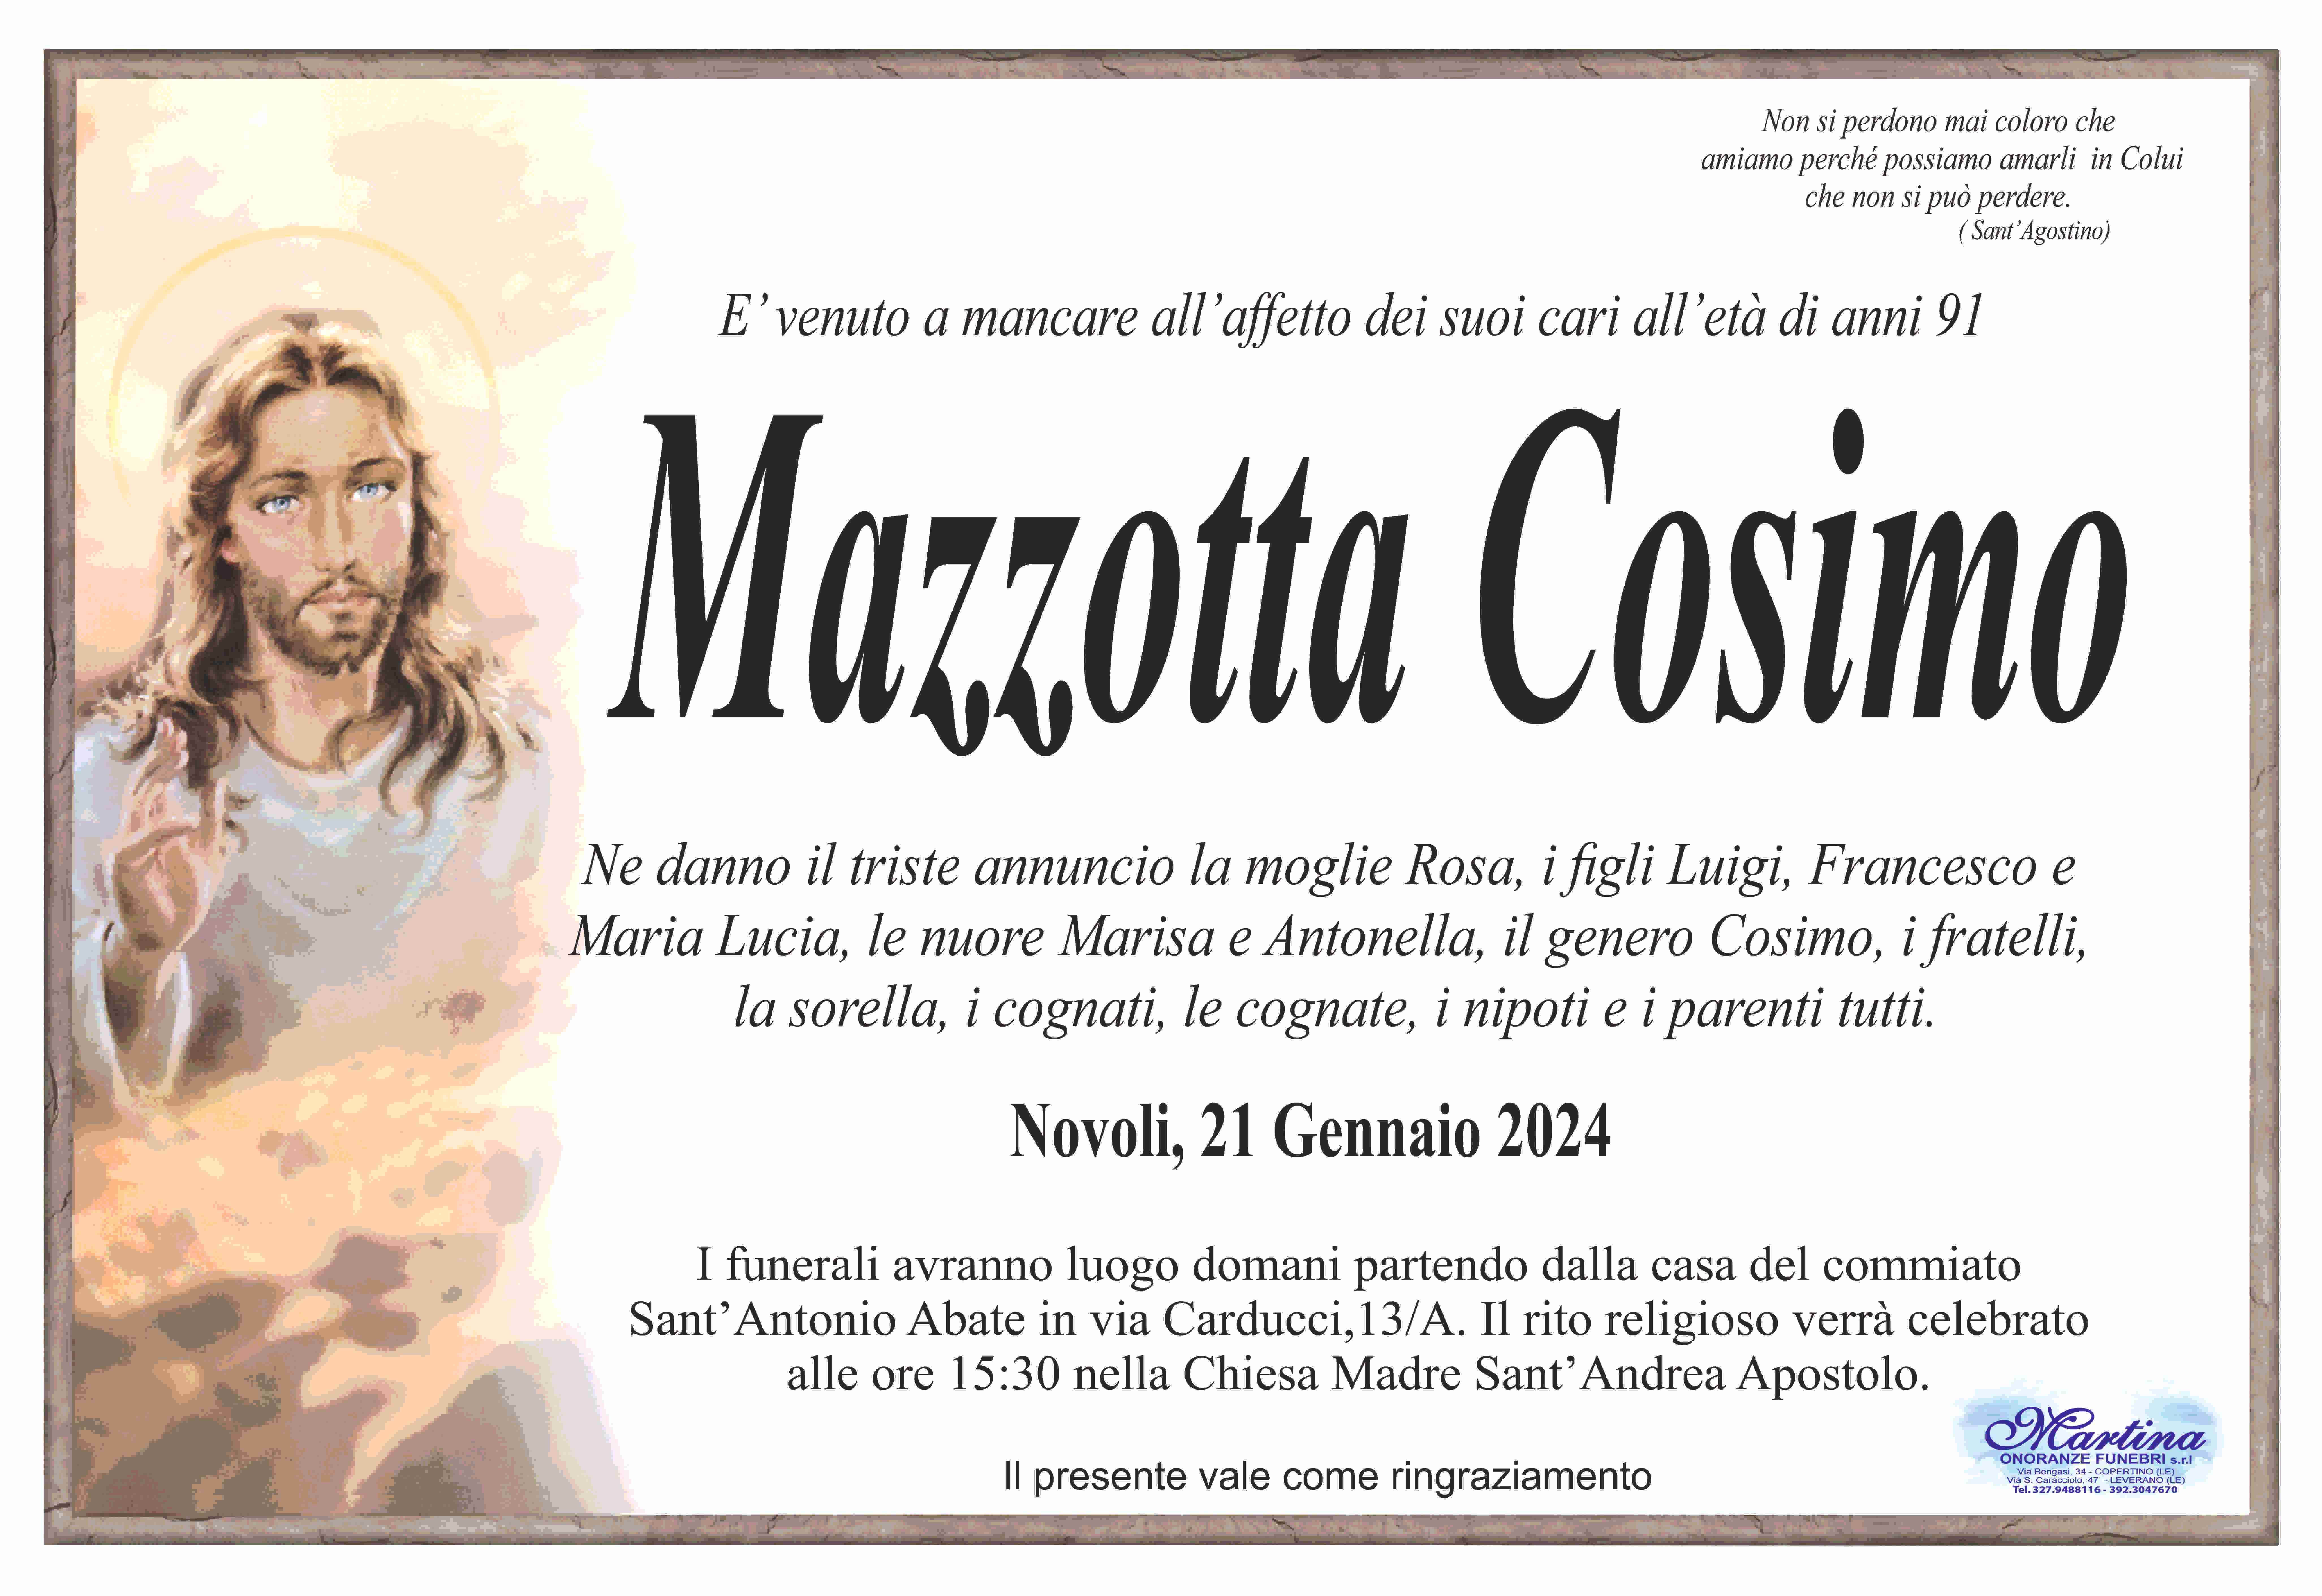 Cosimo Mazzotta